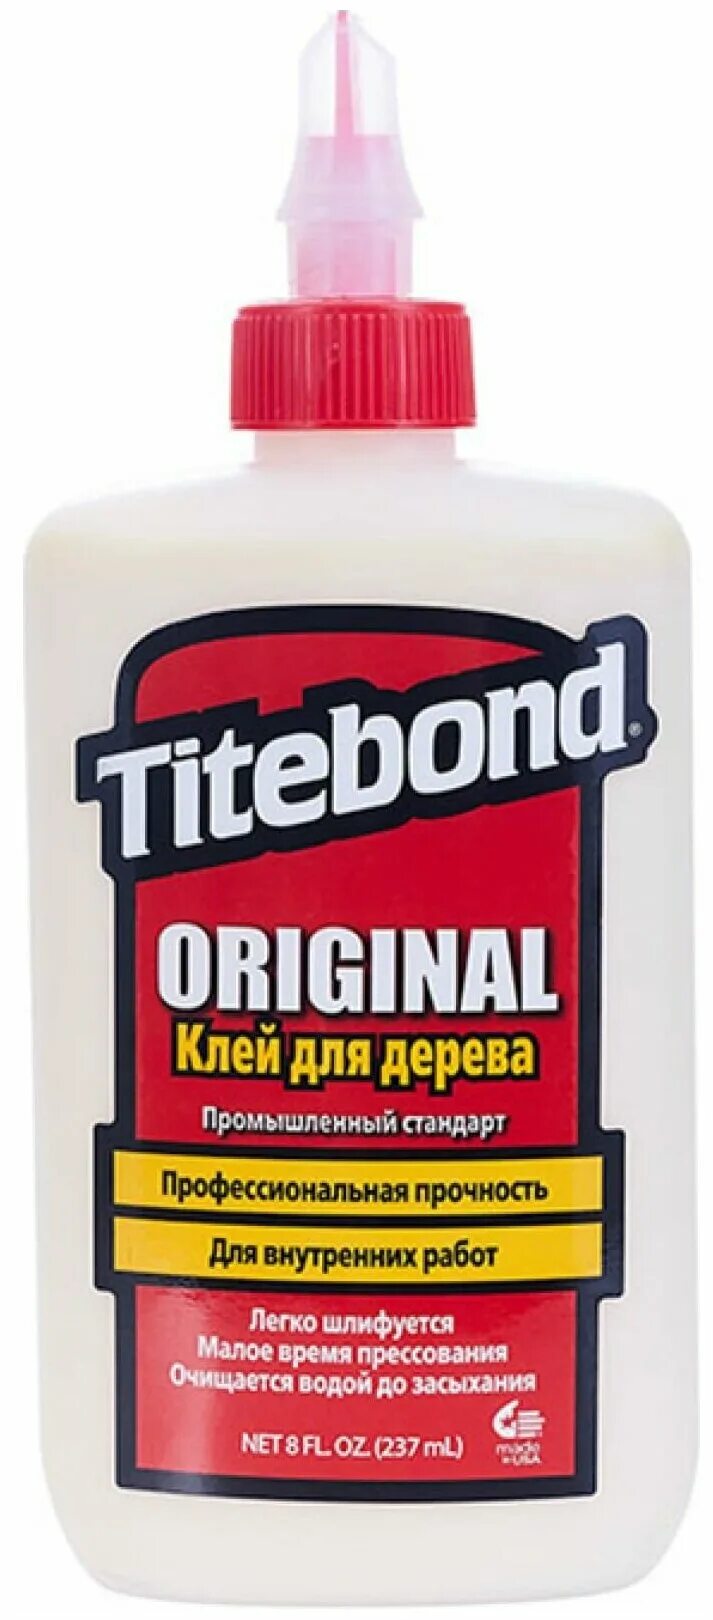 Купить клей тайтбонд. Клей Titebond Original столярный 946мл. Клей Titebond Ultimate III Wood Glue 3,785 л. Titebond III Ultimate 1413. Titebond III Ultimate для дерева.